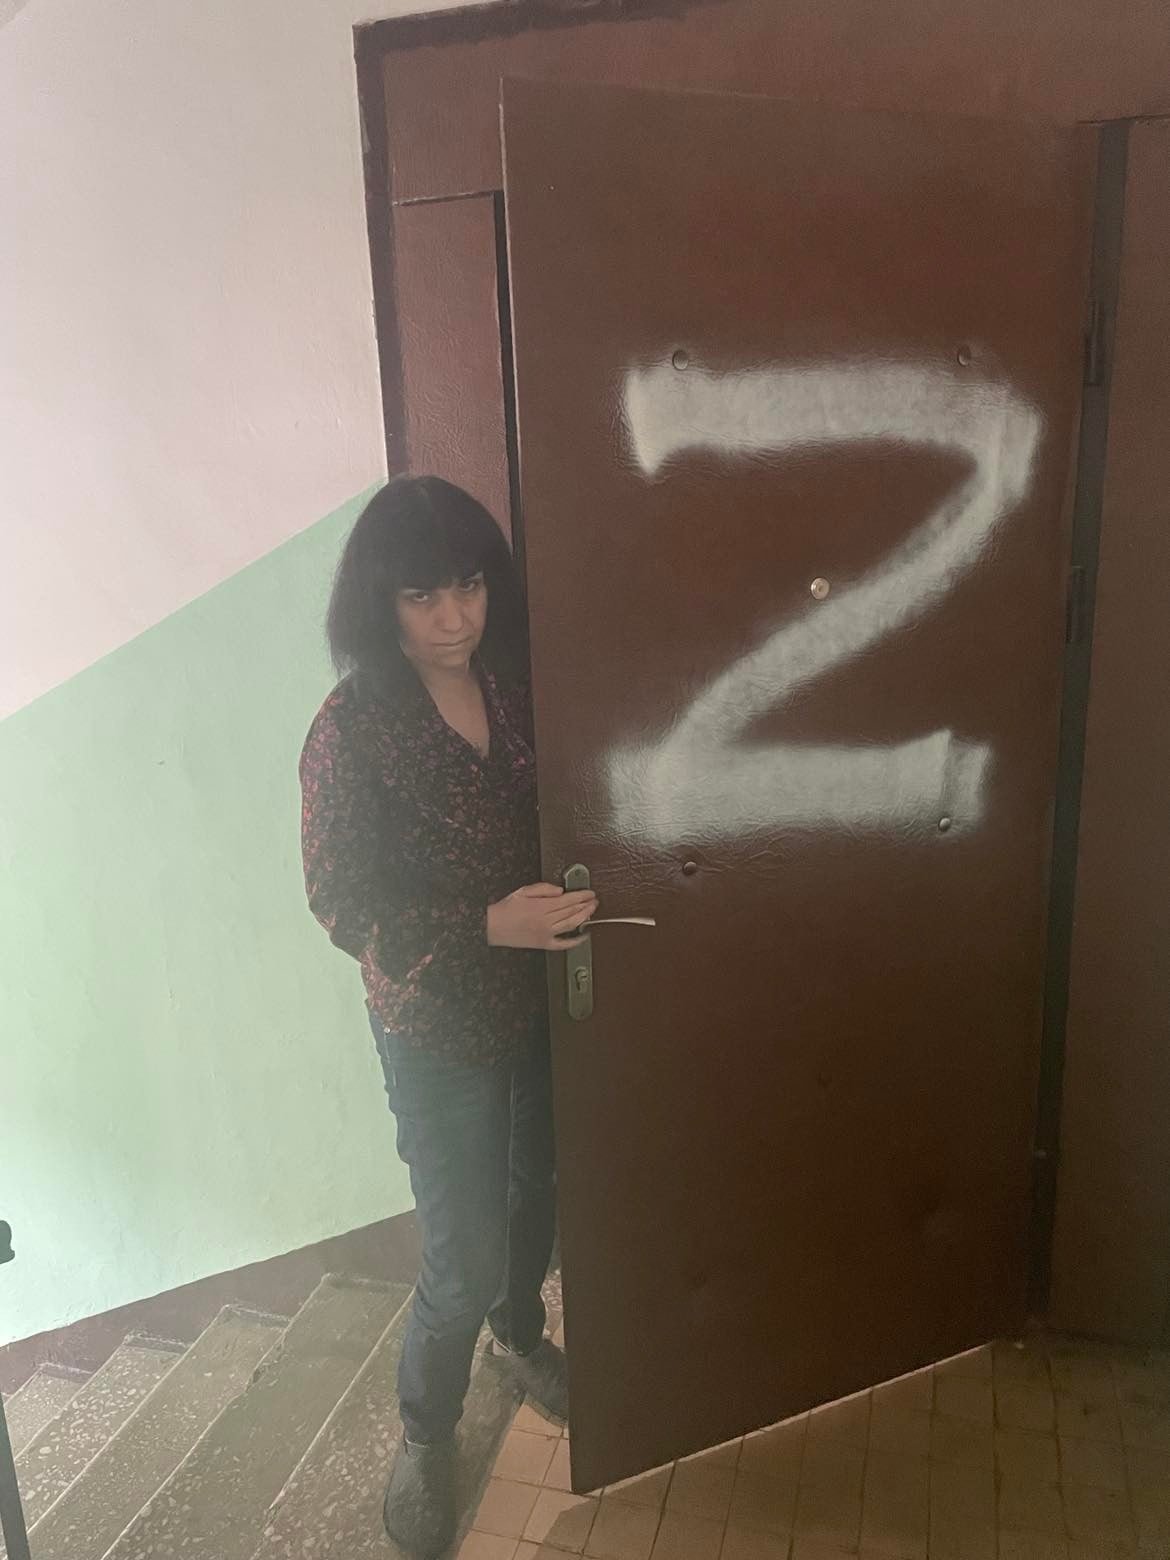 Дверь квартиры Марины Давыдовой с нанесенной буквой Z. Фото: Facebook / ignatson